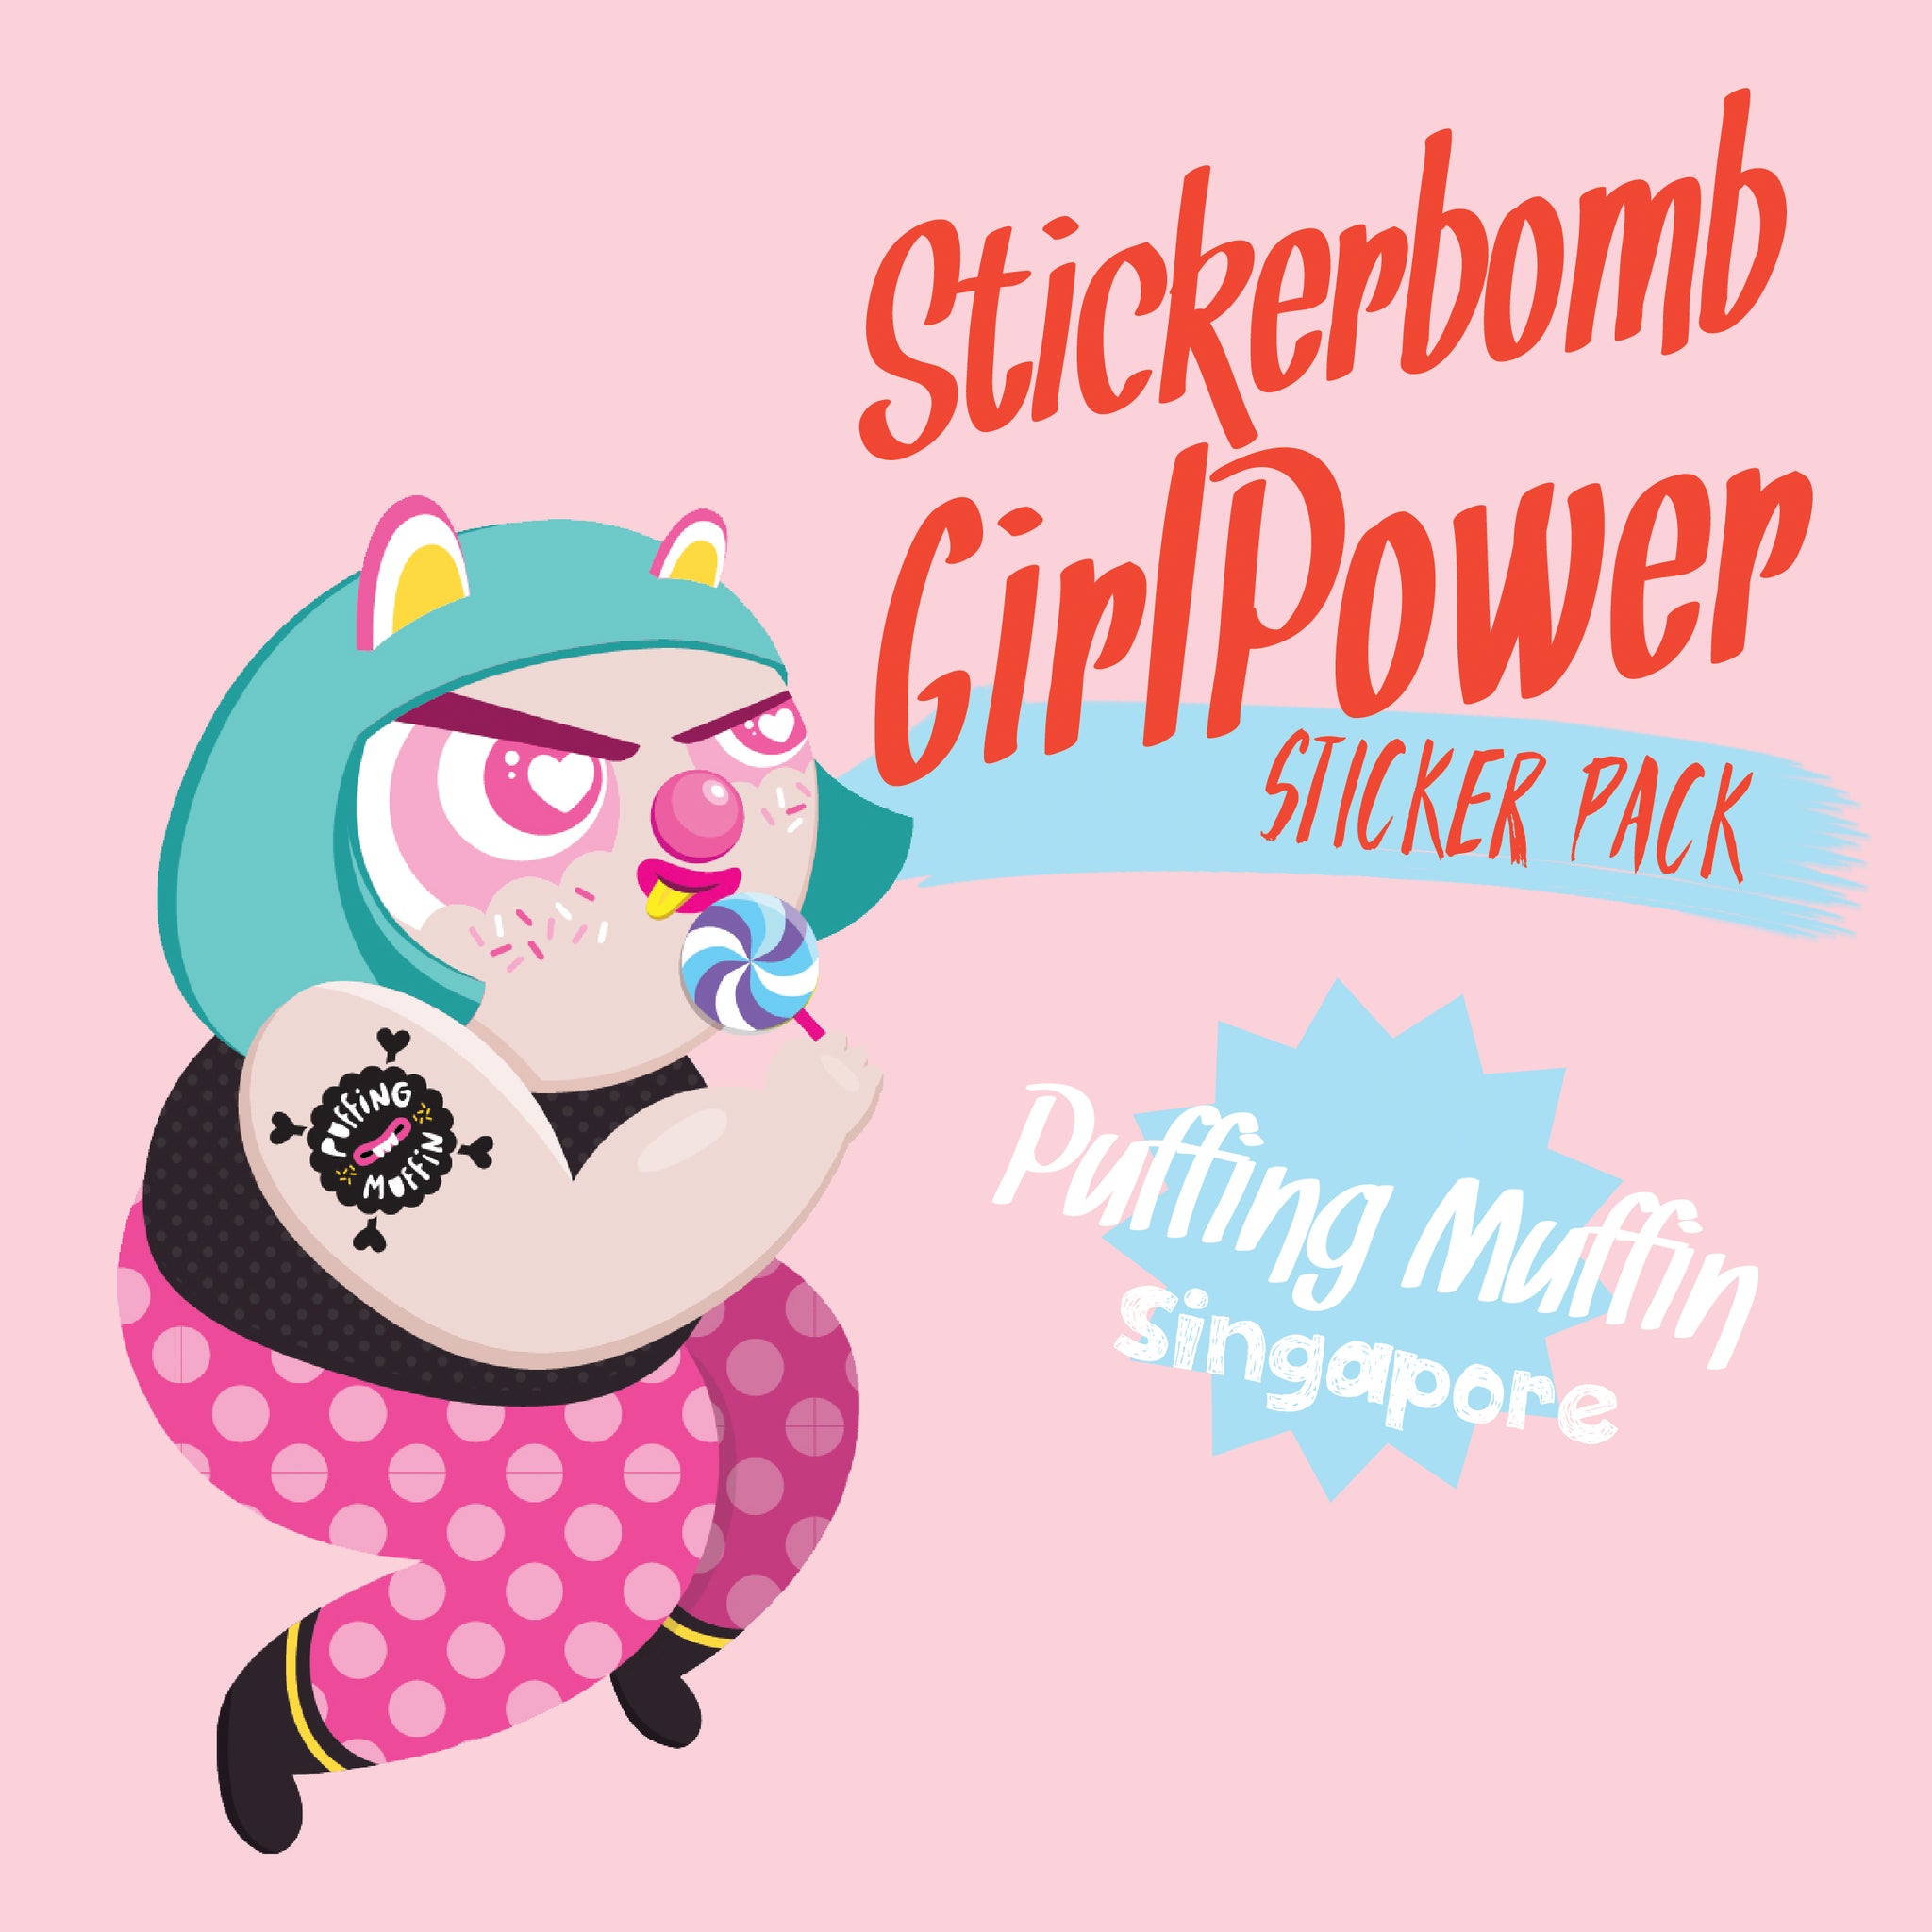 Stickerbomb Girl Power Sticker Pack